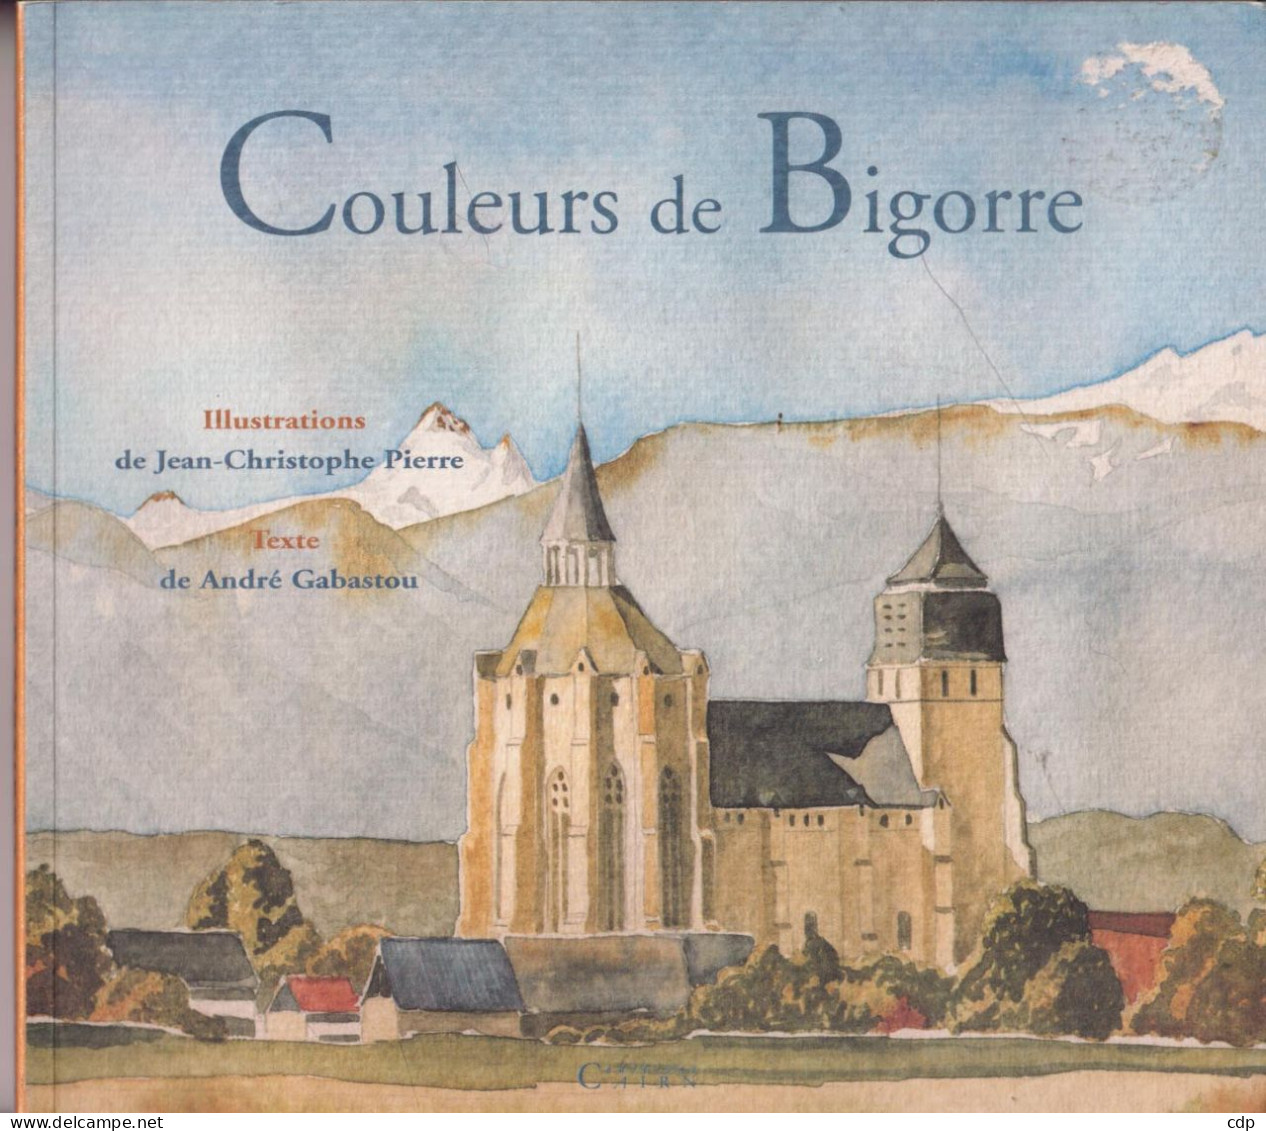 Couleurs De Bigorre - Midi-Pyrénées